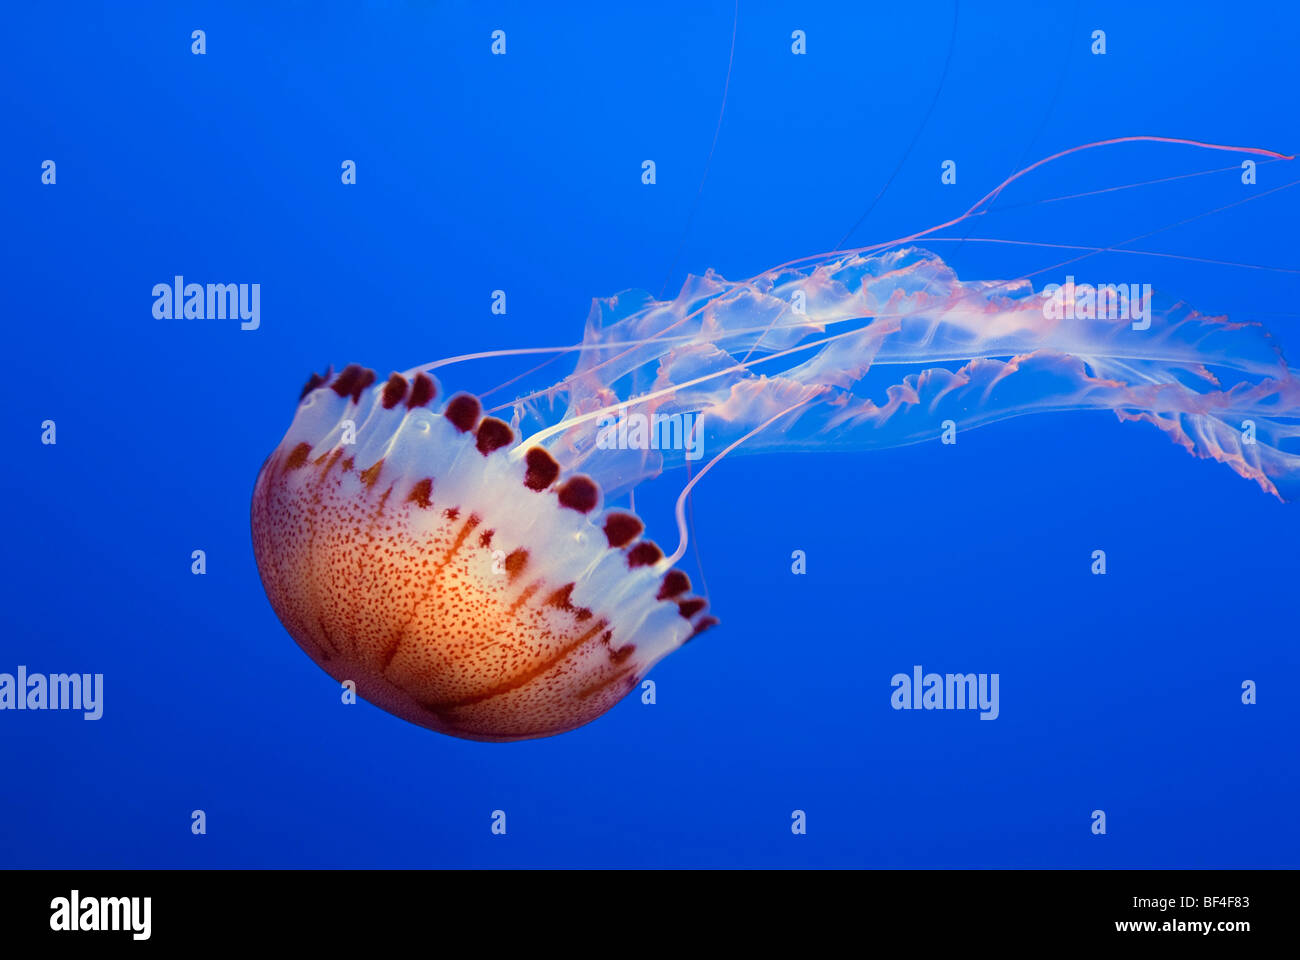 Grandes méduses, mer de l'Atlantique (Chrysaora quinquecirrha Ortie) Banque D'Images